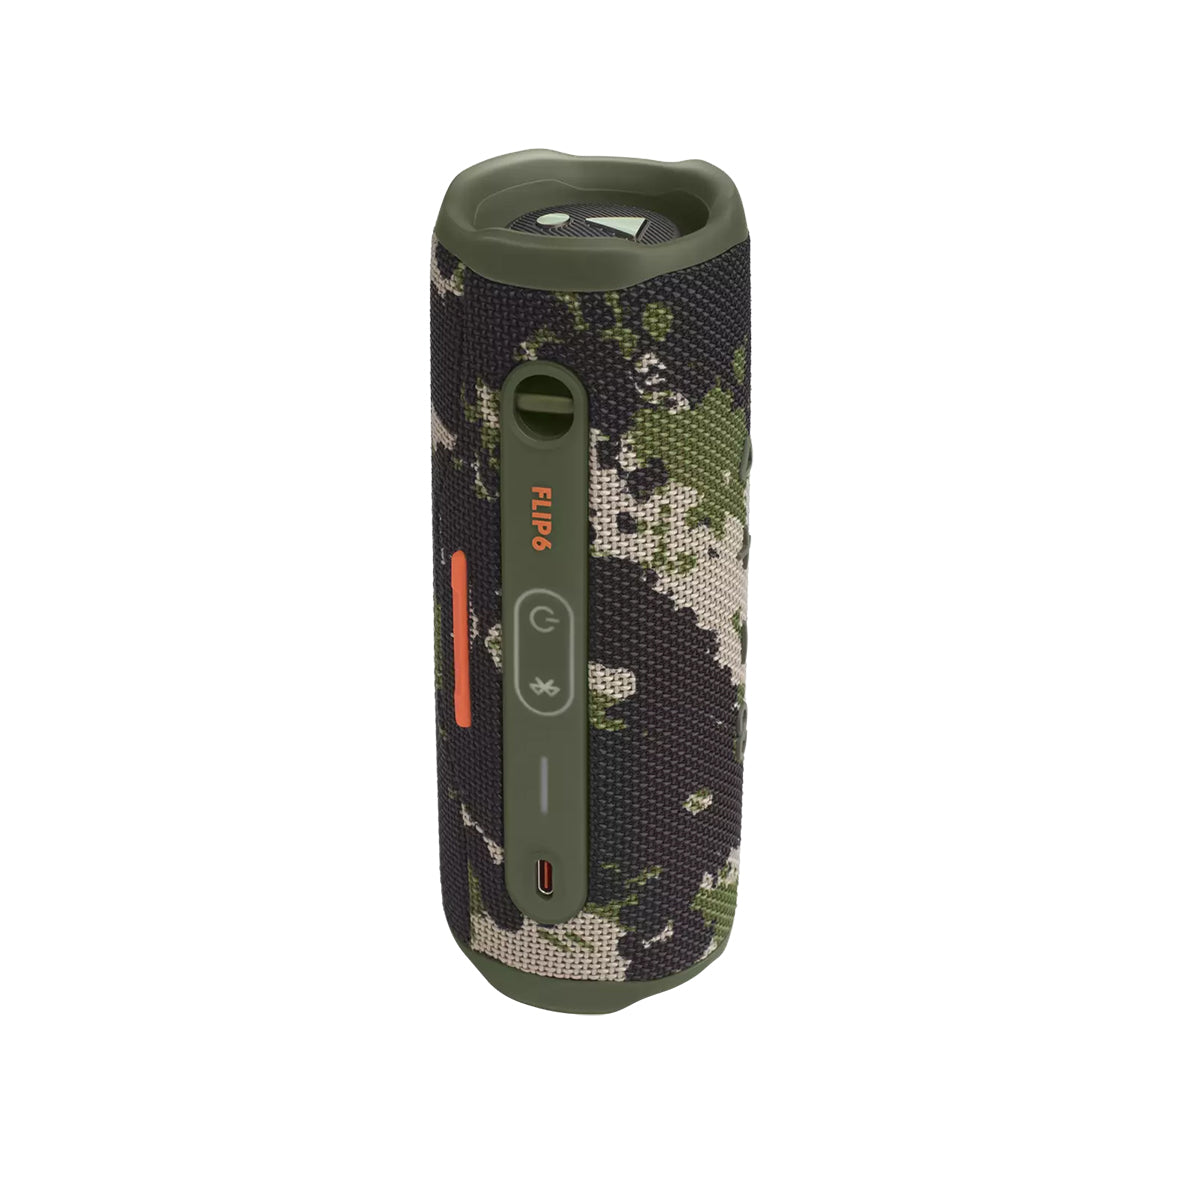 JBL Flip 6 Portable Bluetooth Portable Speaker System - Black for sale  online